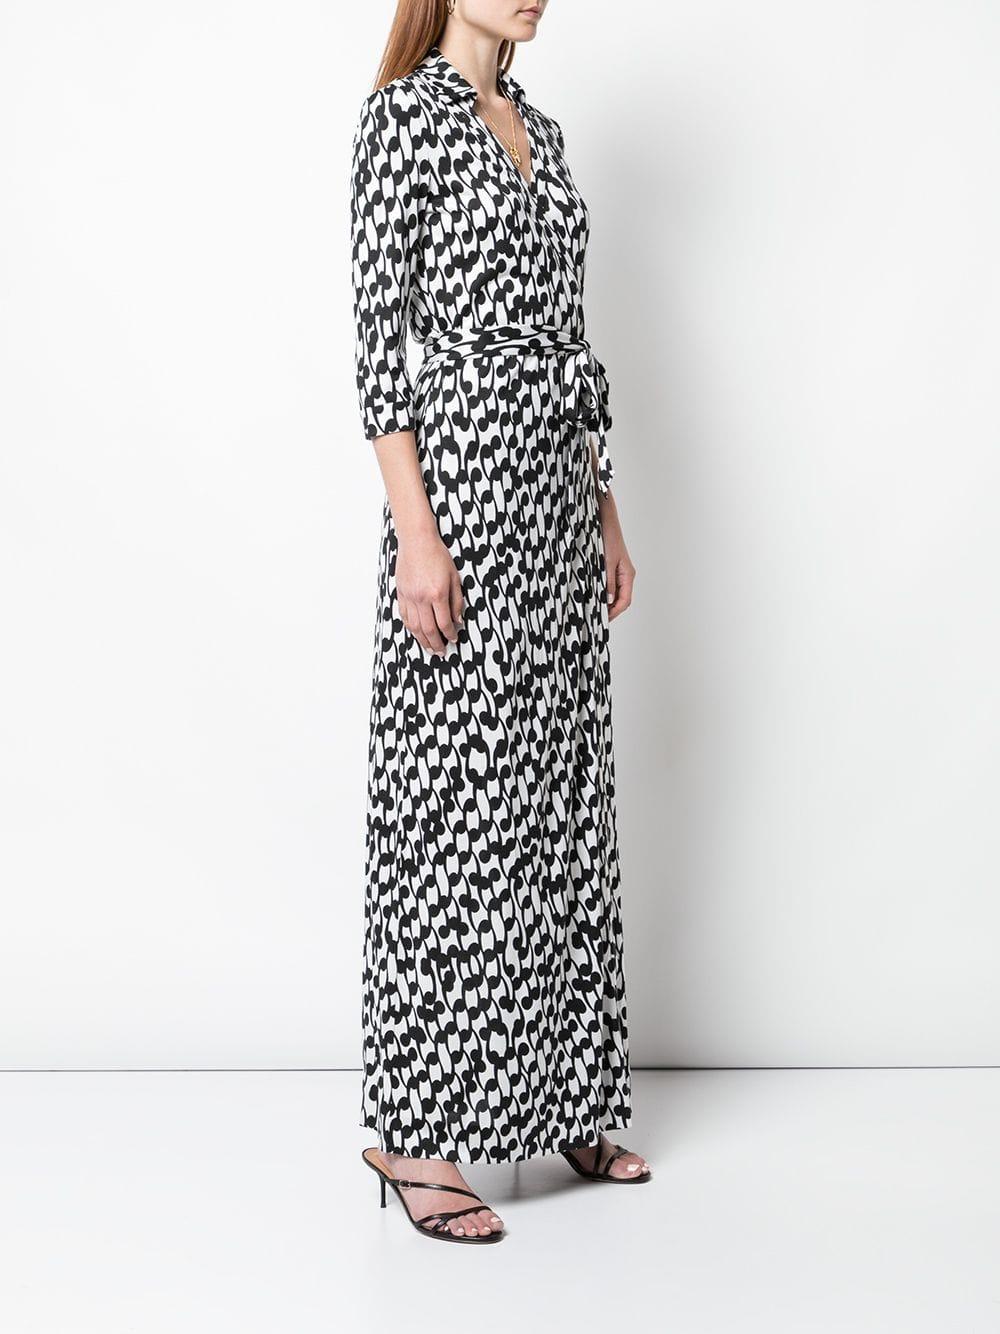 Diane von Furstenberg Printed Maxi Wrap Dress in White - Lyst